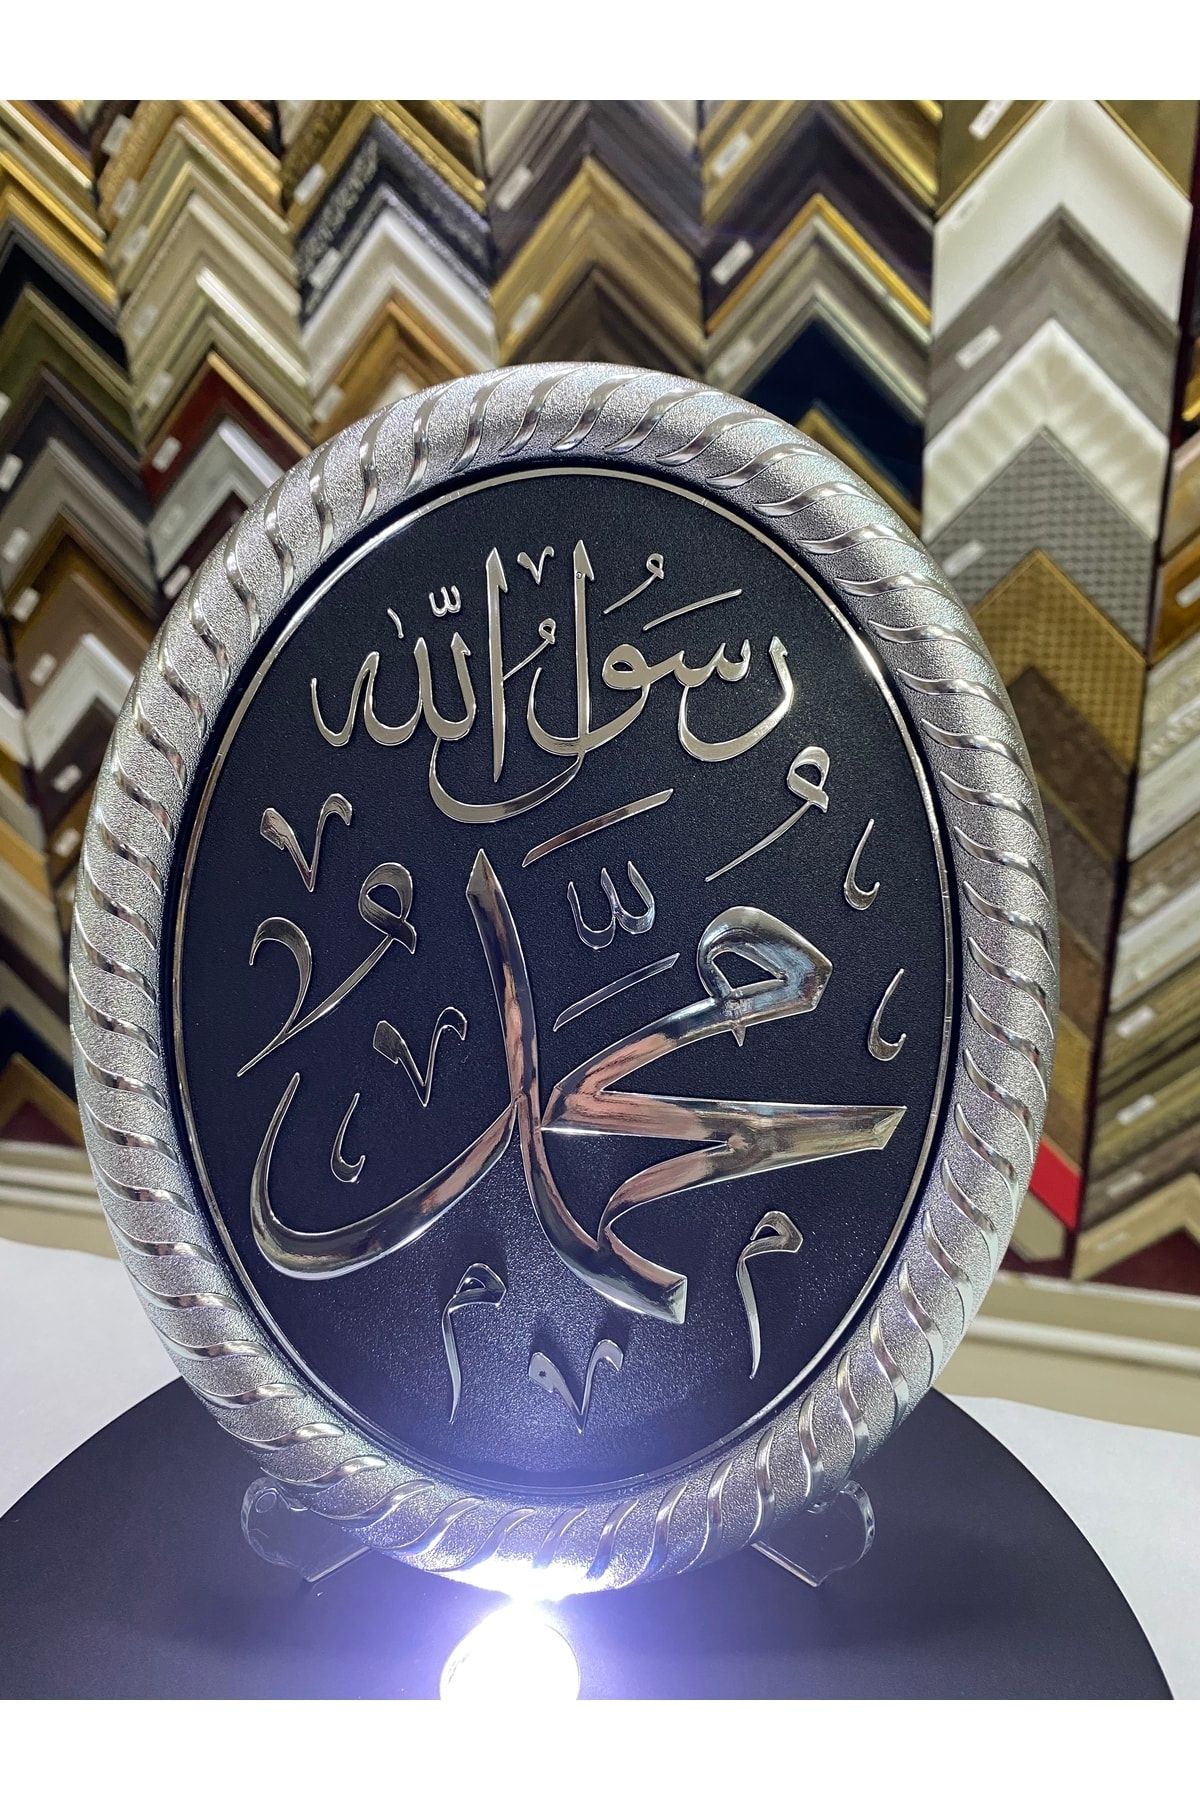 KARAHAN ÇERÇEVE VE KANVAS TABLO Oval Gümüş Muhammed C.c. Yazısı